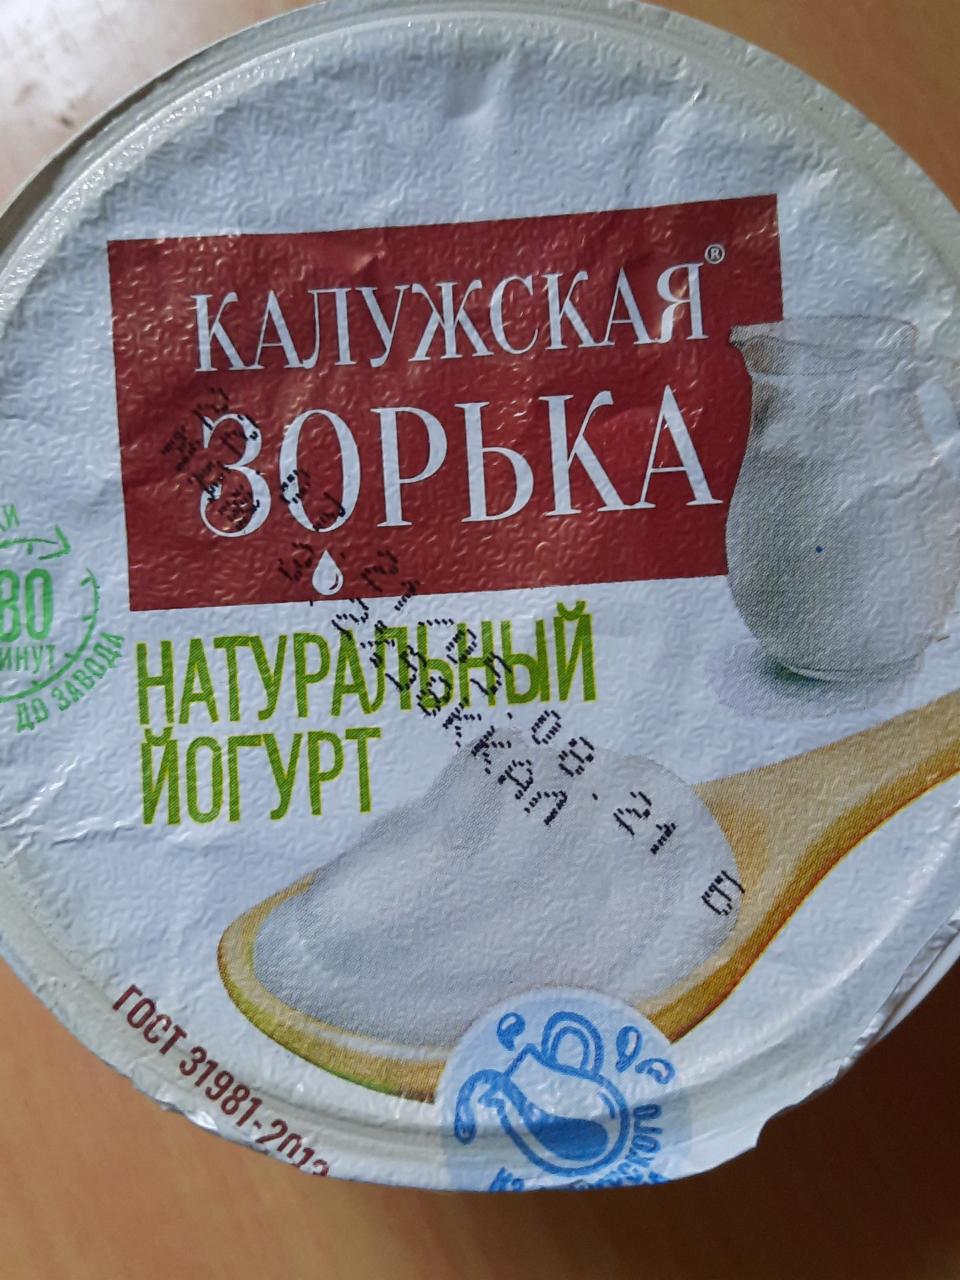 Фото - Йогурт натуральный 3.2% Калужская зорька